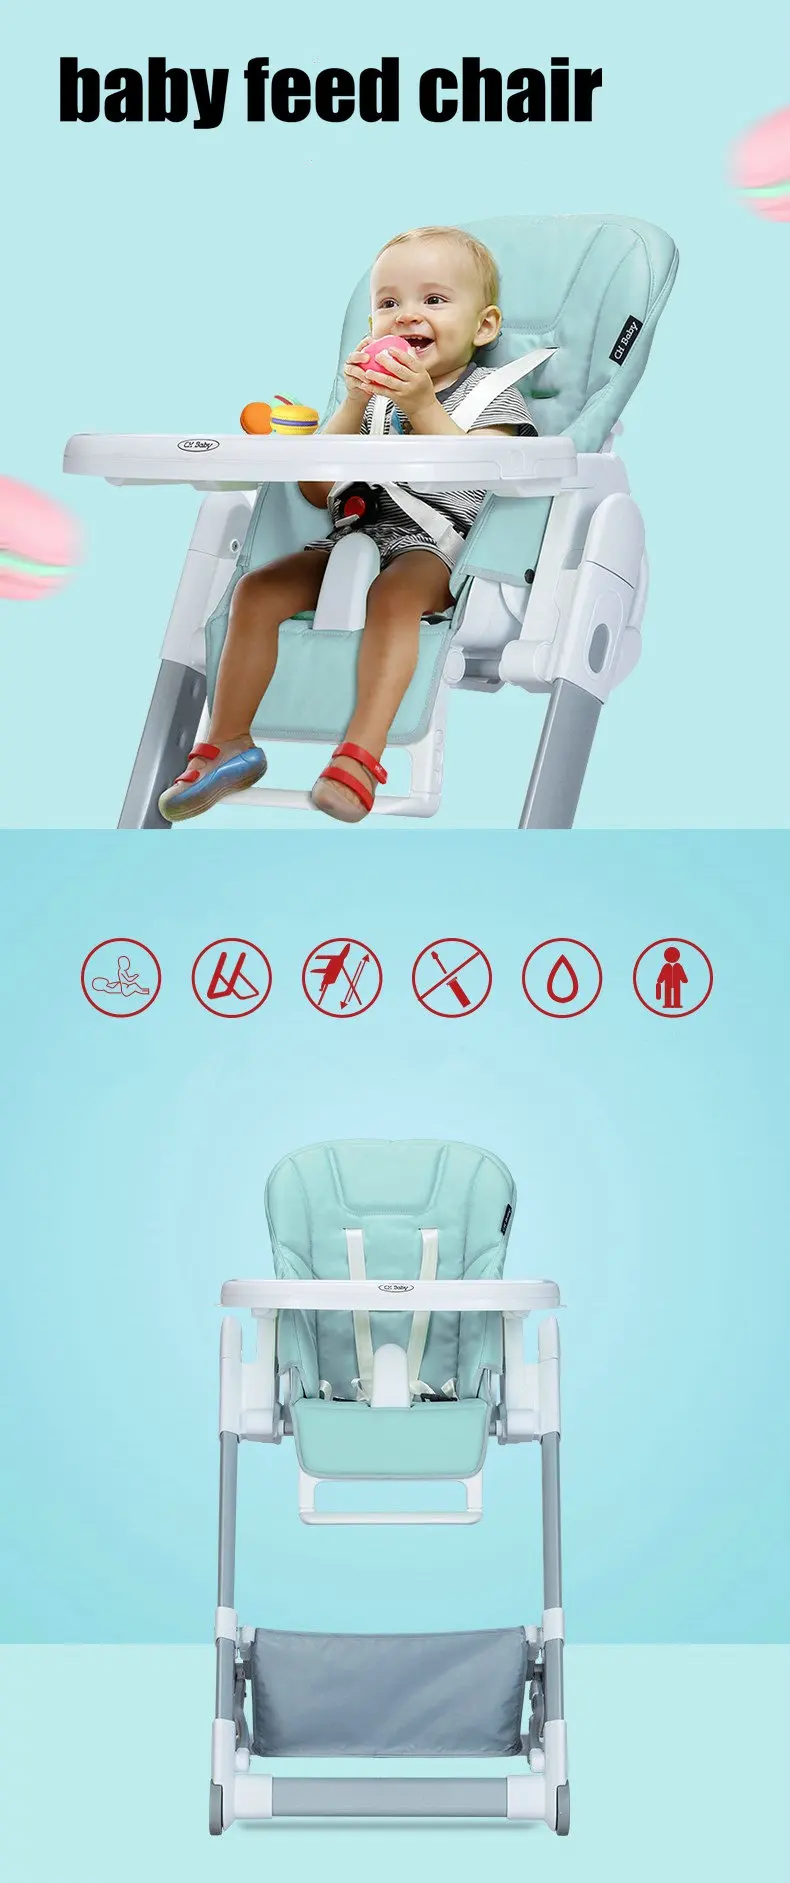 CH детский складной детский стульчик, многофункциональный портативный детский стульчик для кормления, регулируемый по высоте детский стул с сиденье из искусственной кожи